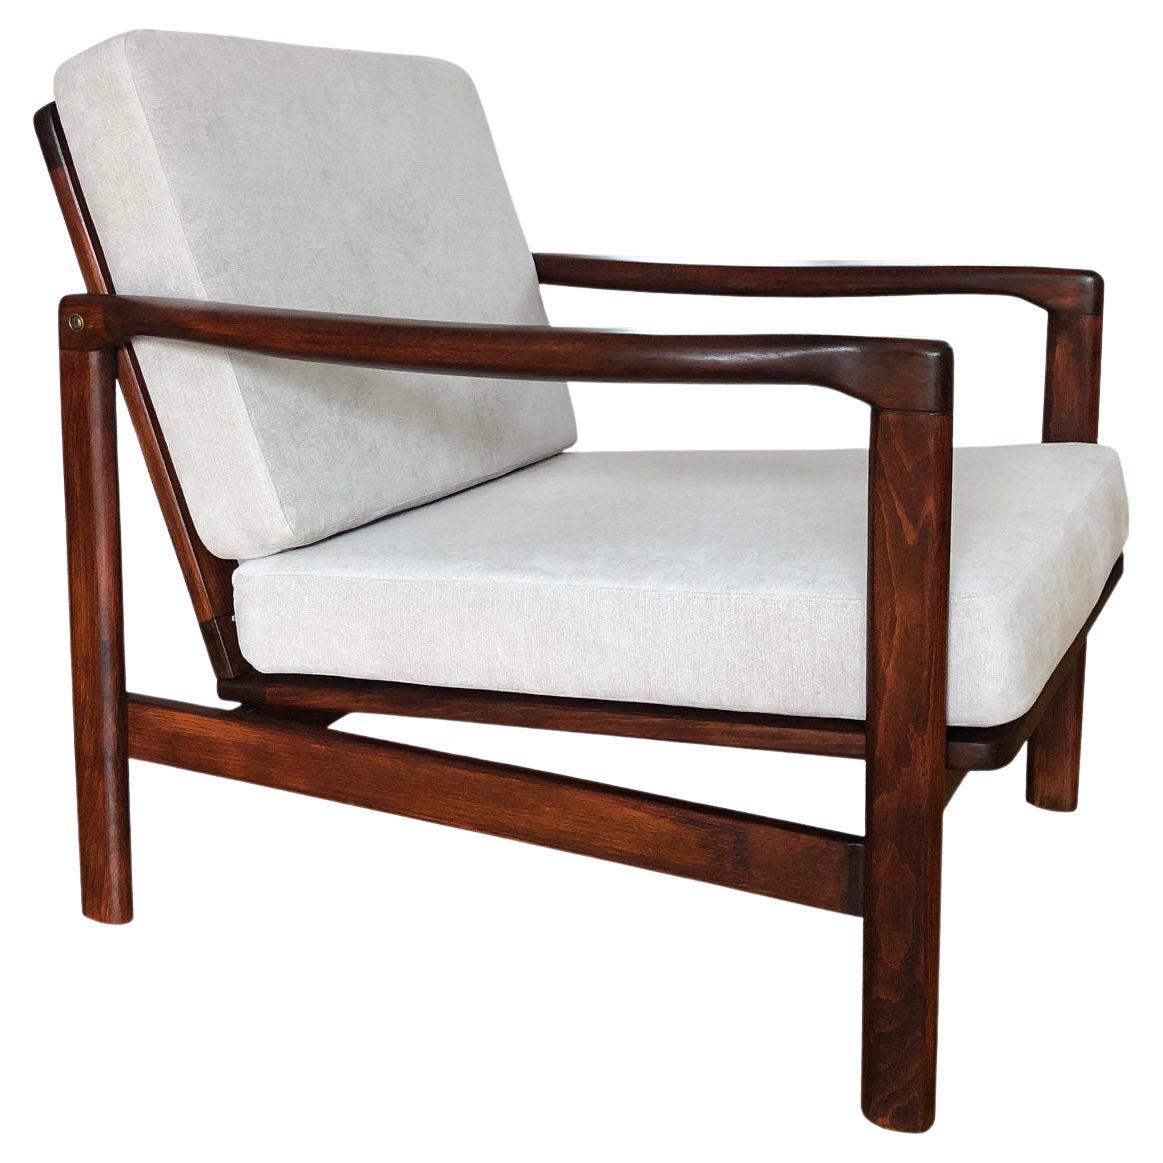 Grauer Sessel von Zenon Bączyk für Swarzędzkie Furniture Factory, 1960er Jahre